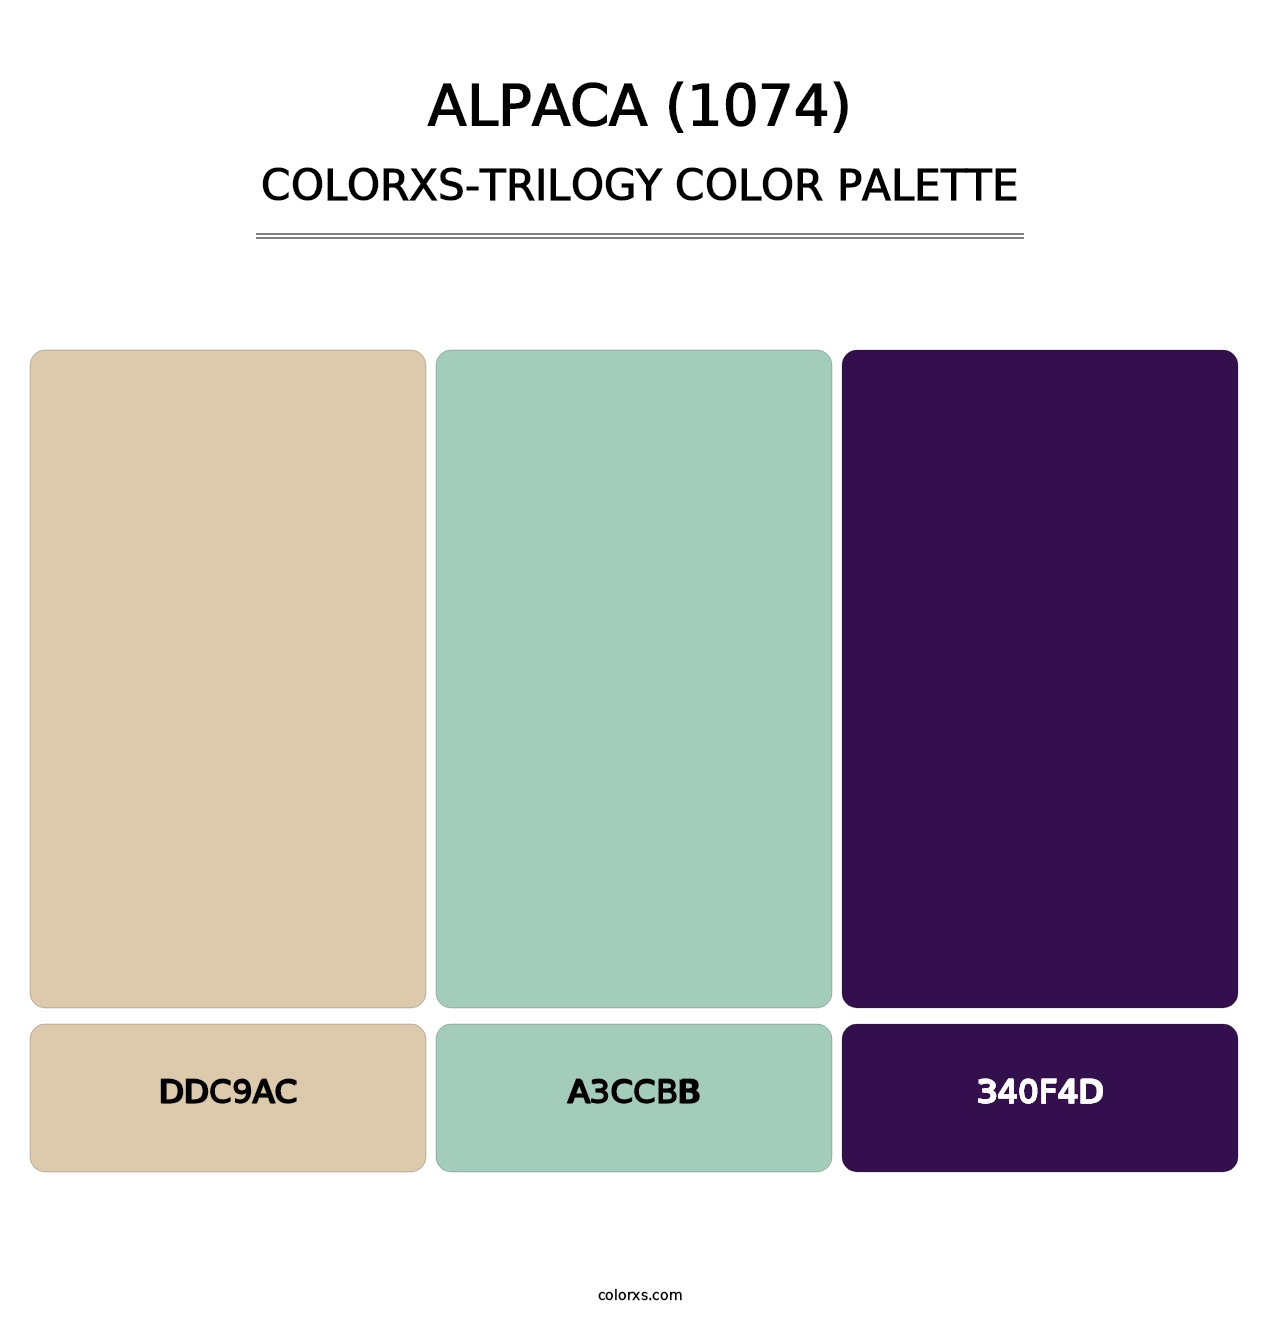 Alpaca (1074) - Colorxs Trilogy Palette